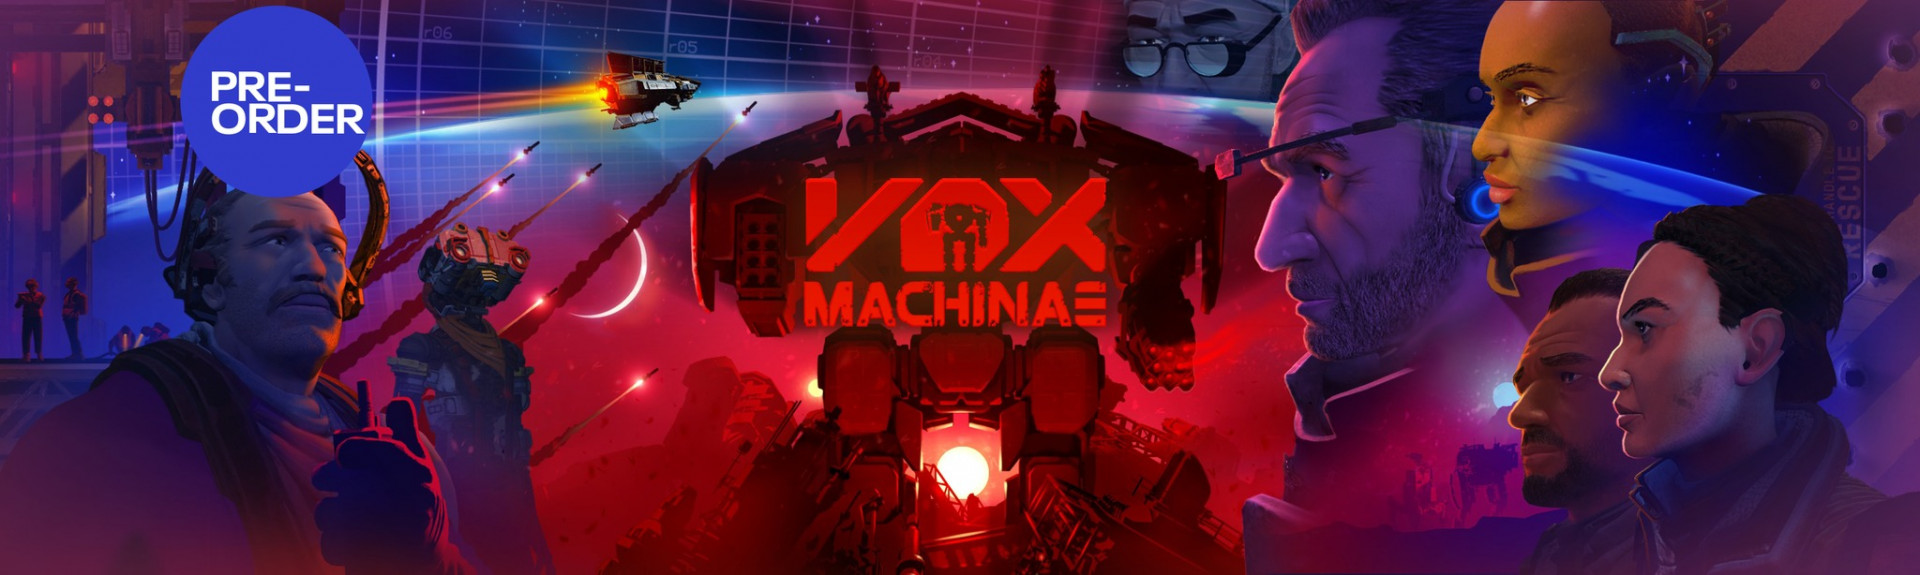 Vox Machinae sale de acceso anticipado y añade contenidos extra